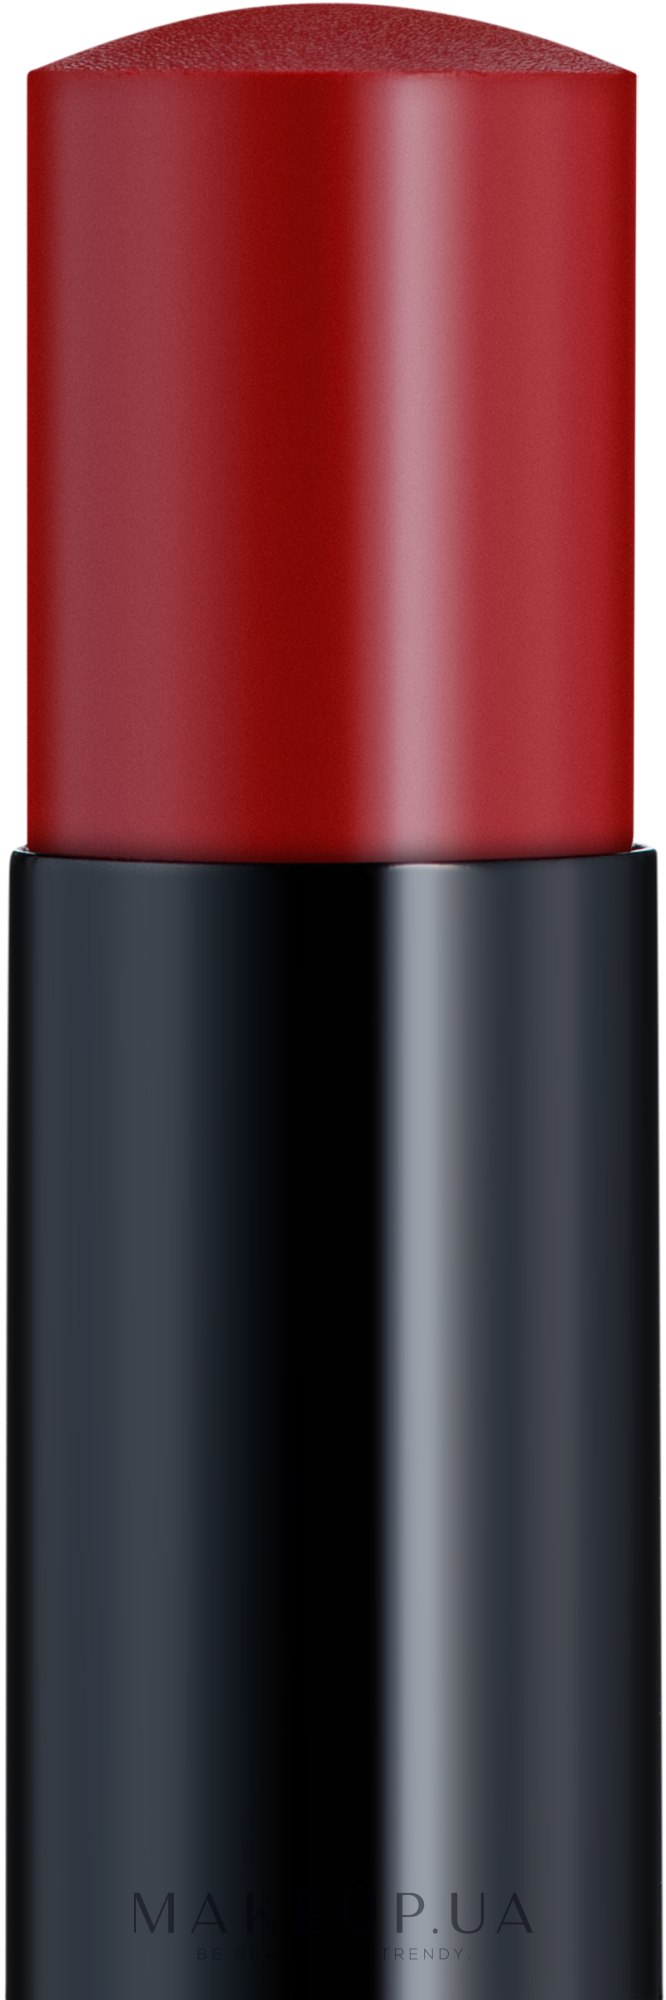 Зволожувальний бальзам для губ - Chanel Les Beiges Healthy Glow Hydrating Lip Balm — фото Intense